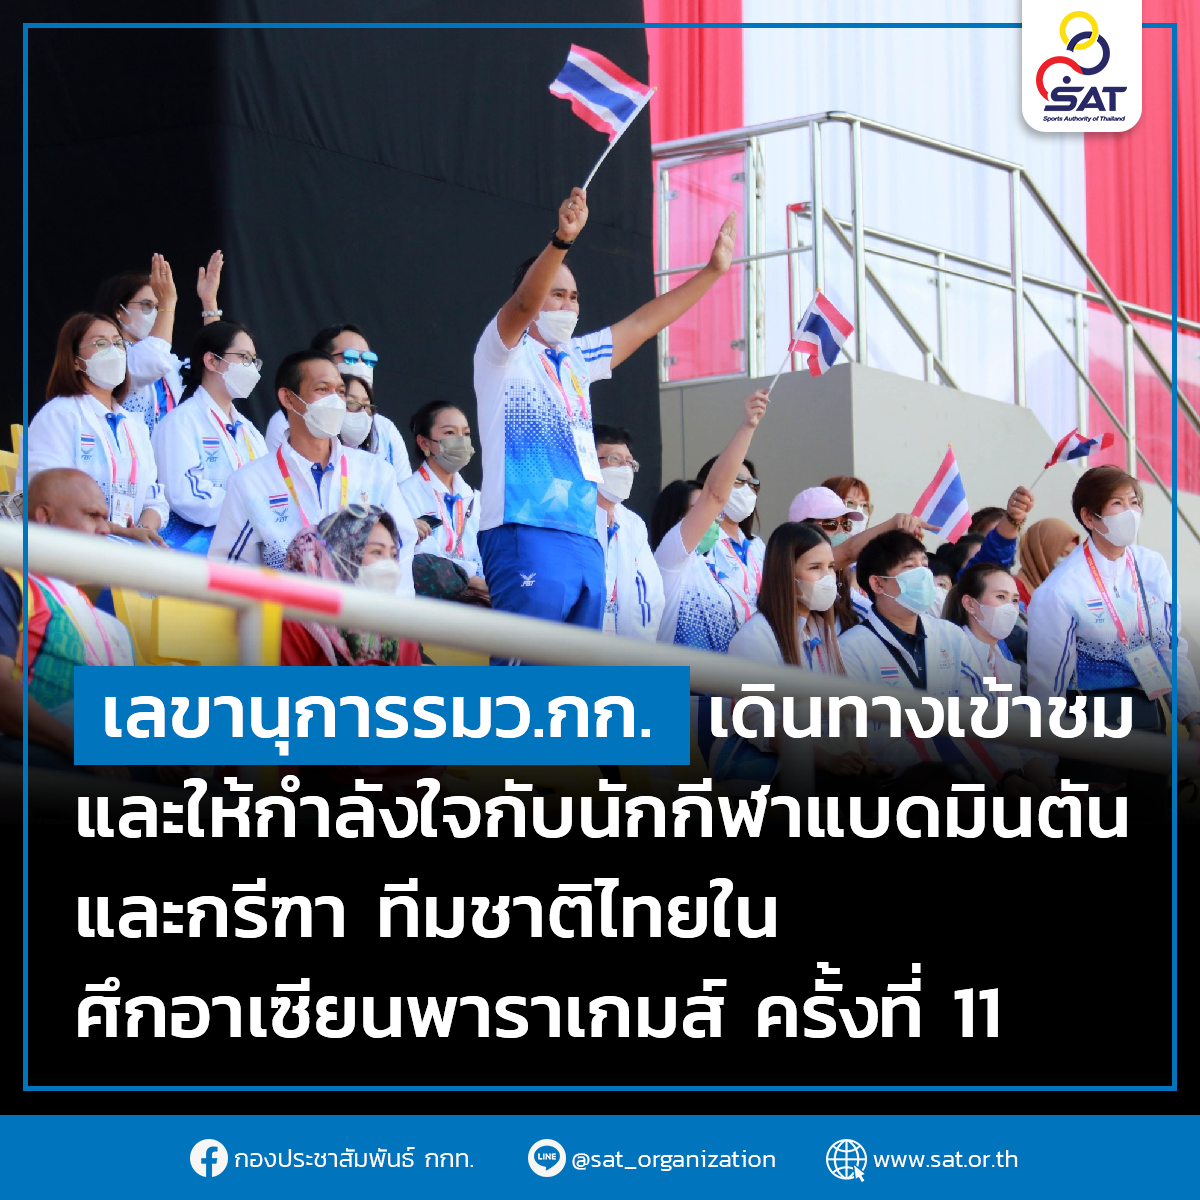 เลขานุการรมว.กก.เดินทางเข้าชมและให้กำลังใจกับนักกีฬาแบดมินตันและกรีฑา ทีมชาติไทยในศึกอาเซียนพาราเกมส์ ครั้งที่ 11 – ข่าวกีฬา